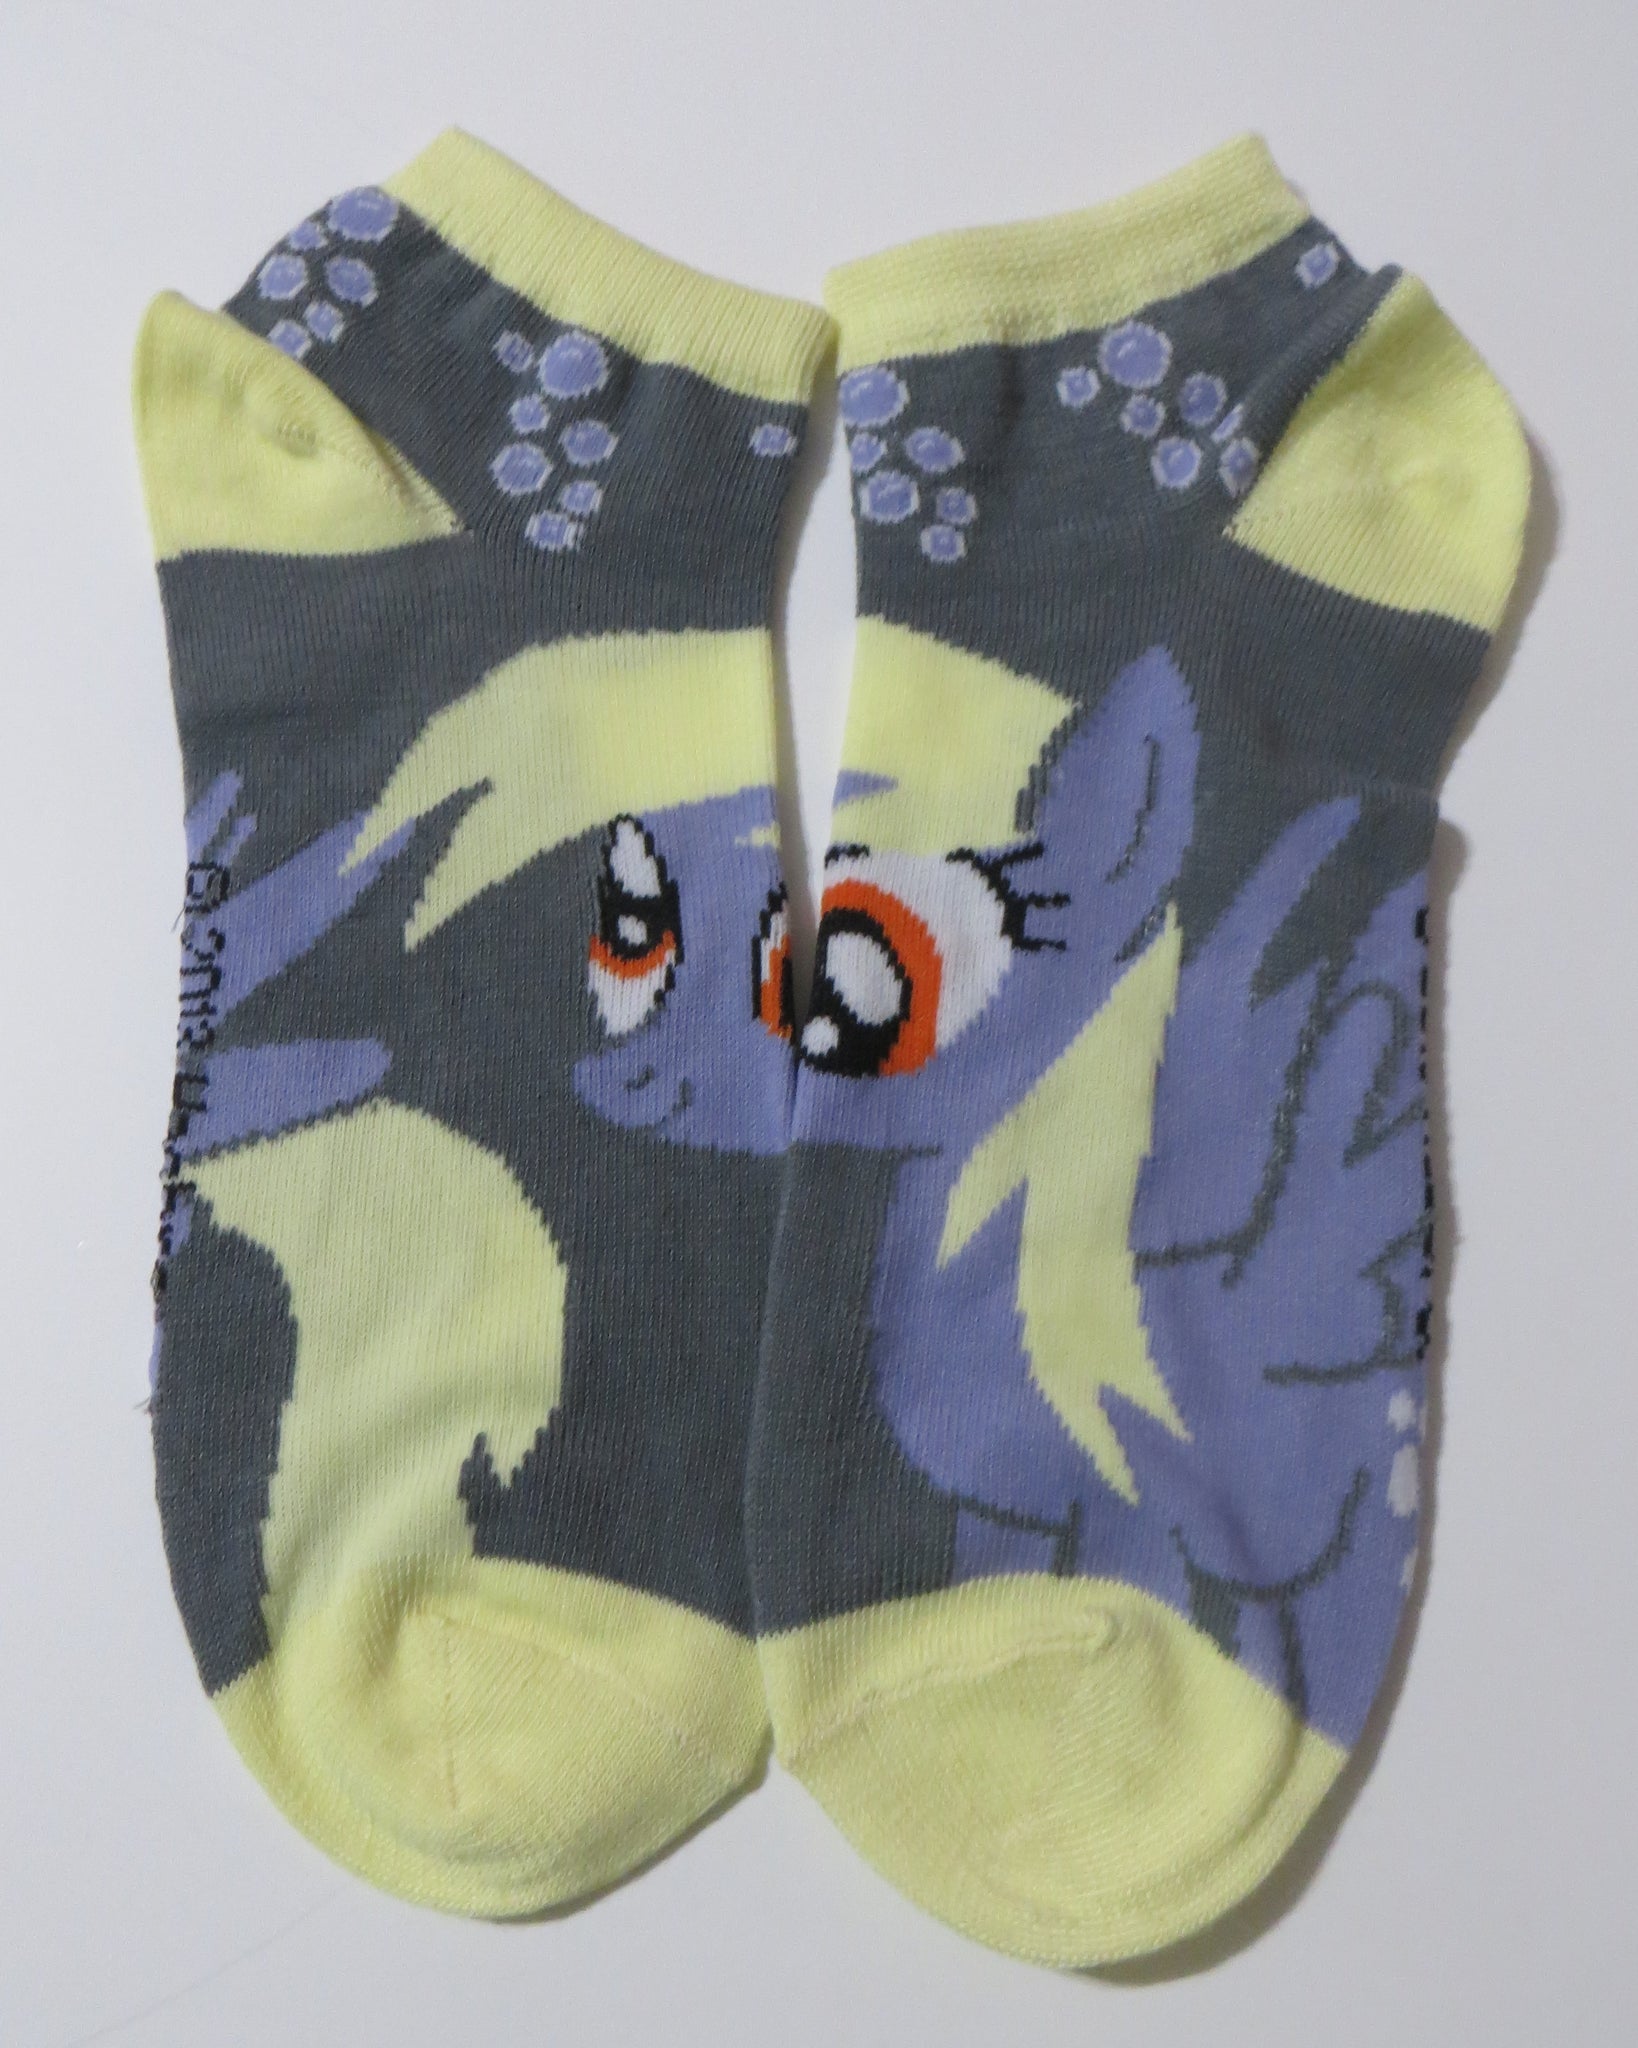 My Little Pony Ankle Socks - 5 Pack Set for Women's Sizes 6-10